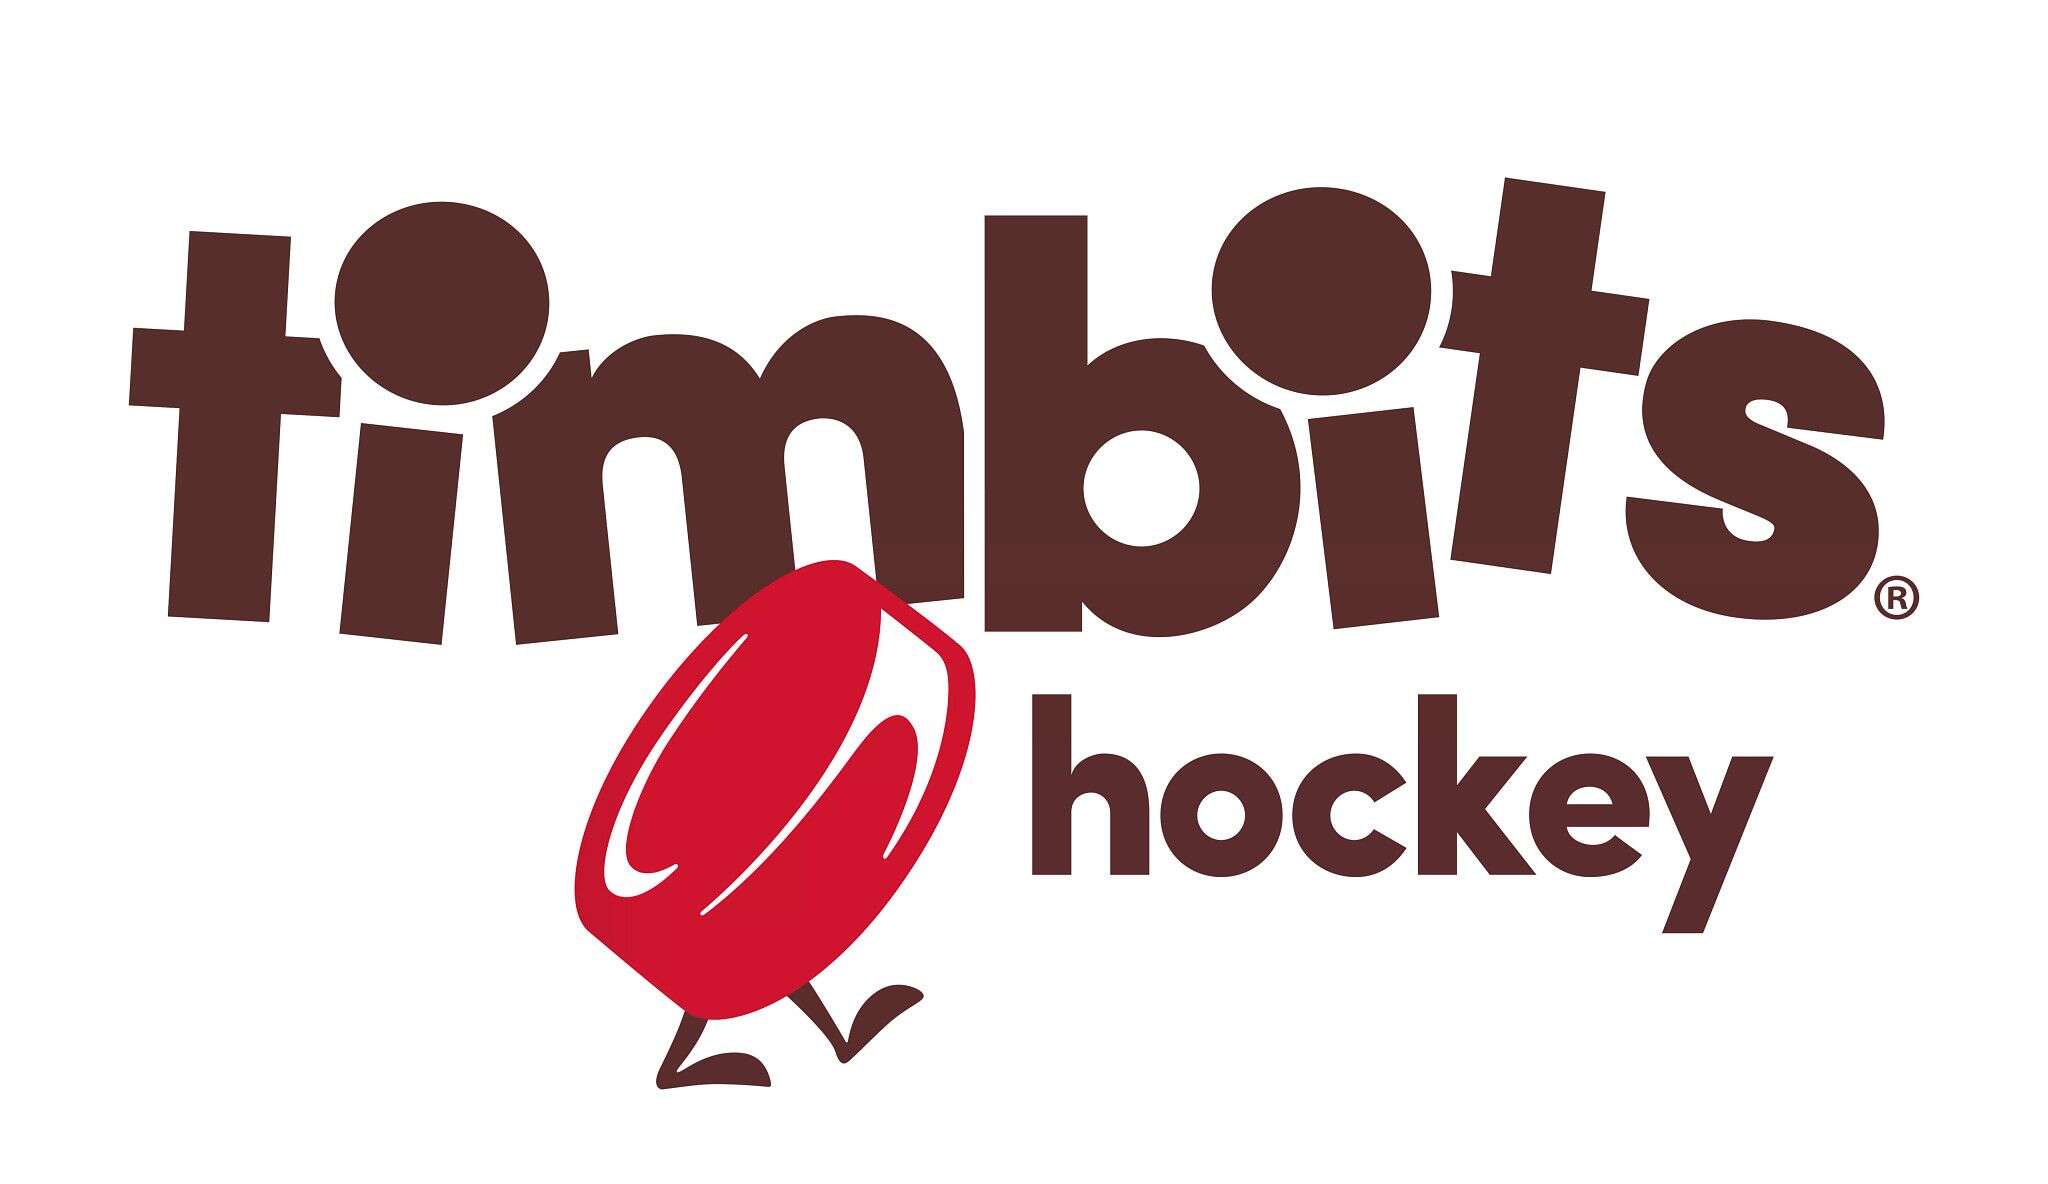 TimBits_Hockey_Revised_V2.jpg